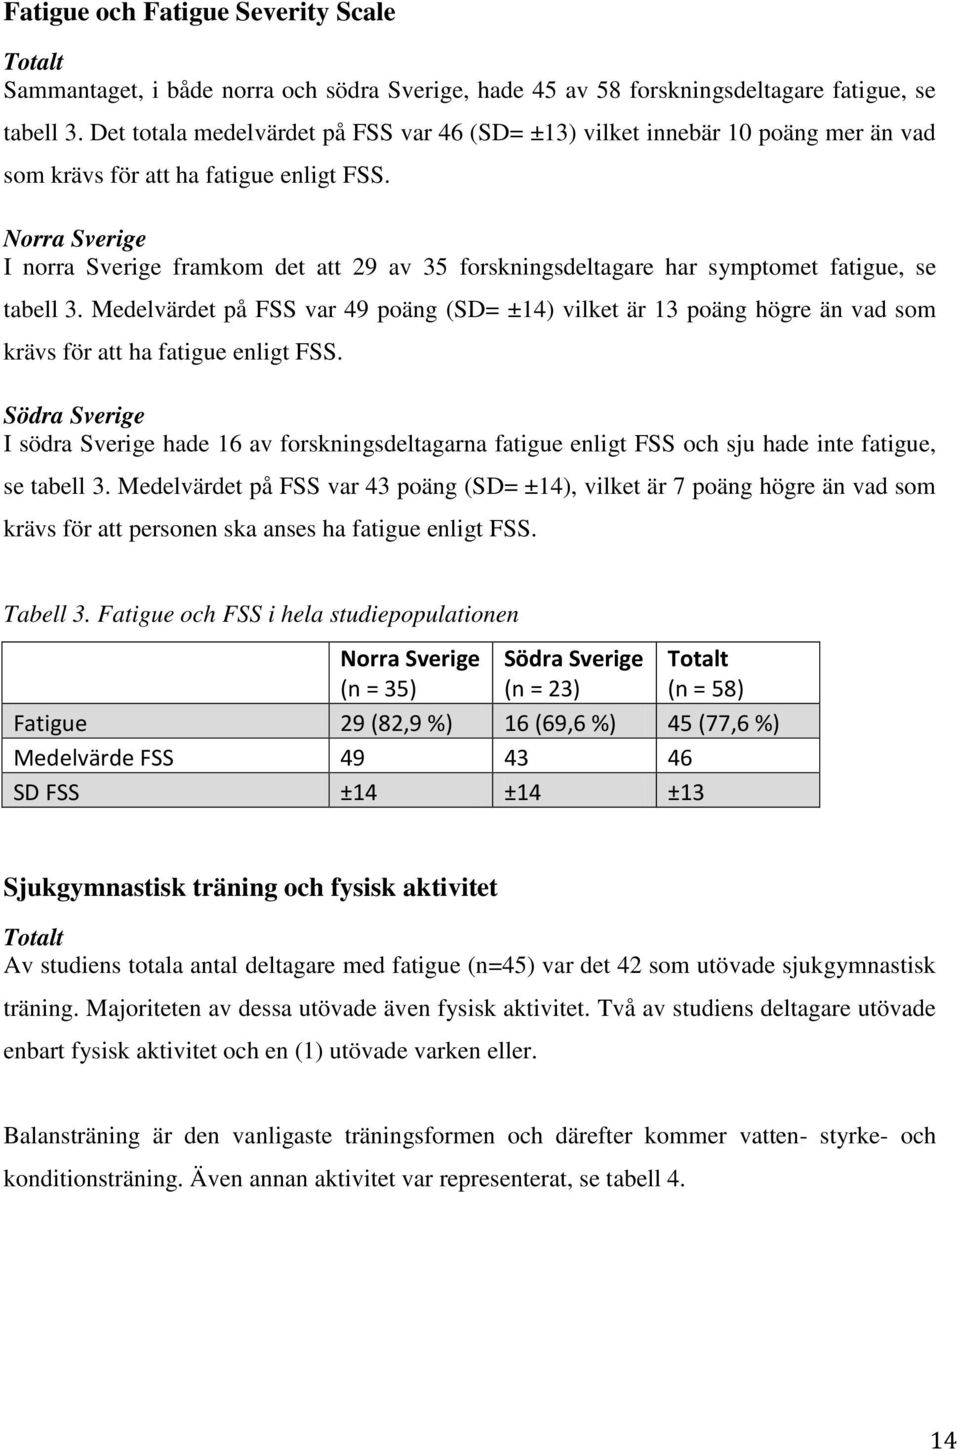 Norra Sverige I norra Sverige framkom det att 29 av 35 forskningsdeltagare har symptomet fatigue, se tabell 3.